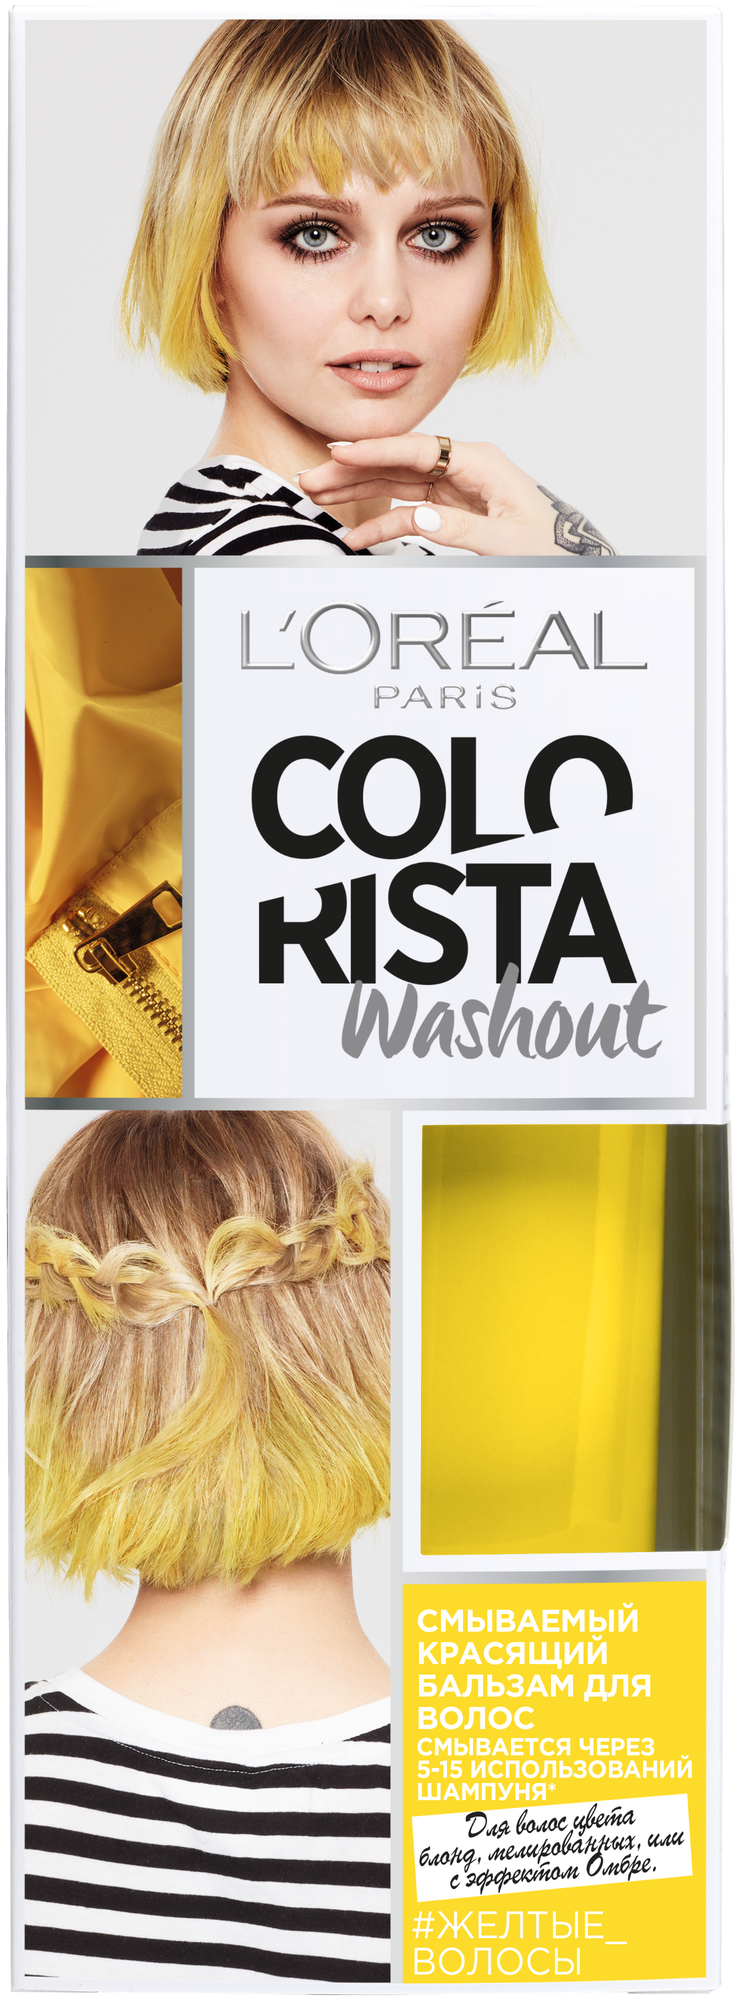 L'Oreal Paris красящий бальзам Colorista Washout для волос цвета блонд, мелированных, или с эффектом Омбре, оттенок Желтые Волосы, 80 мл